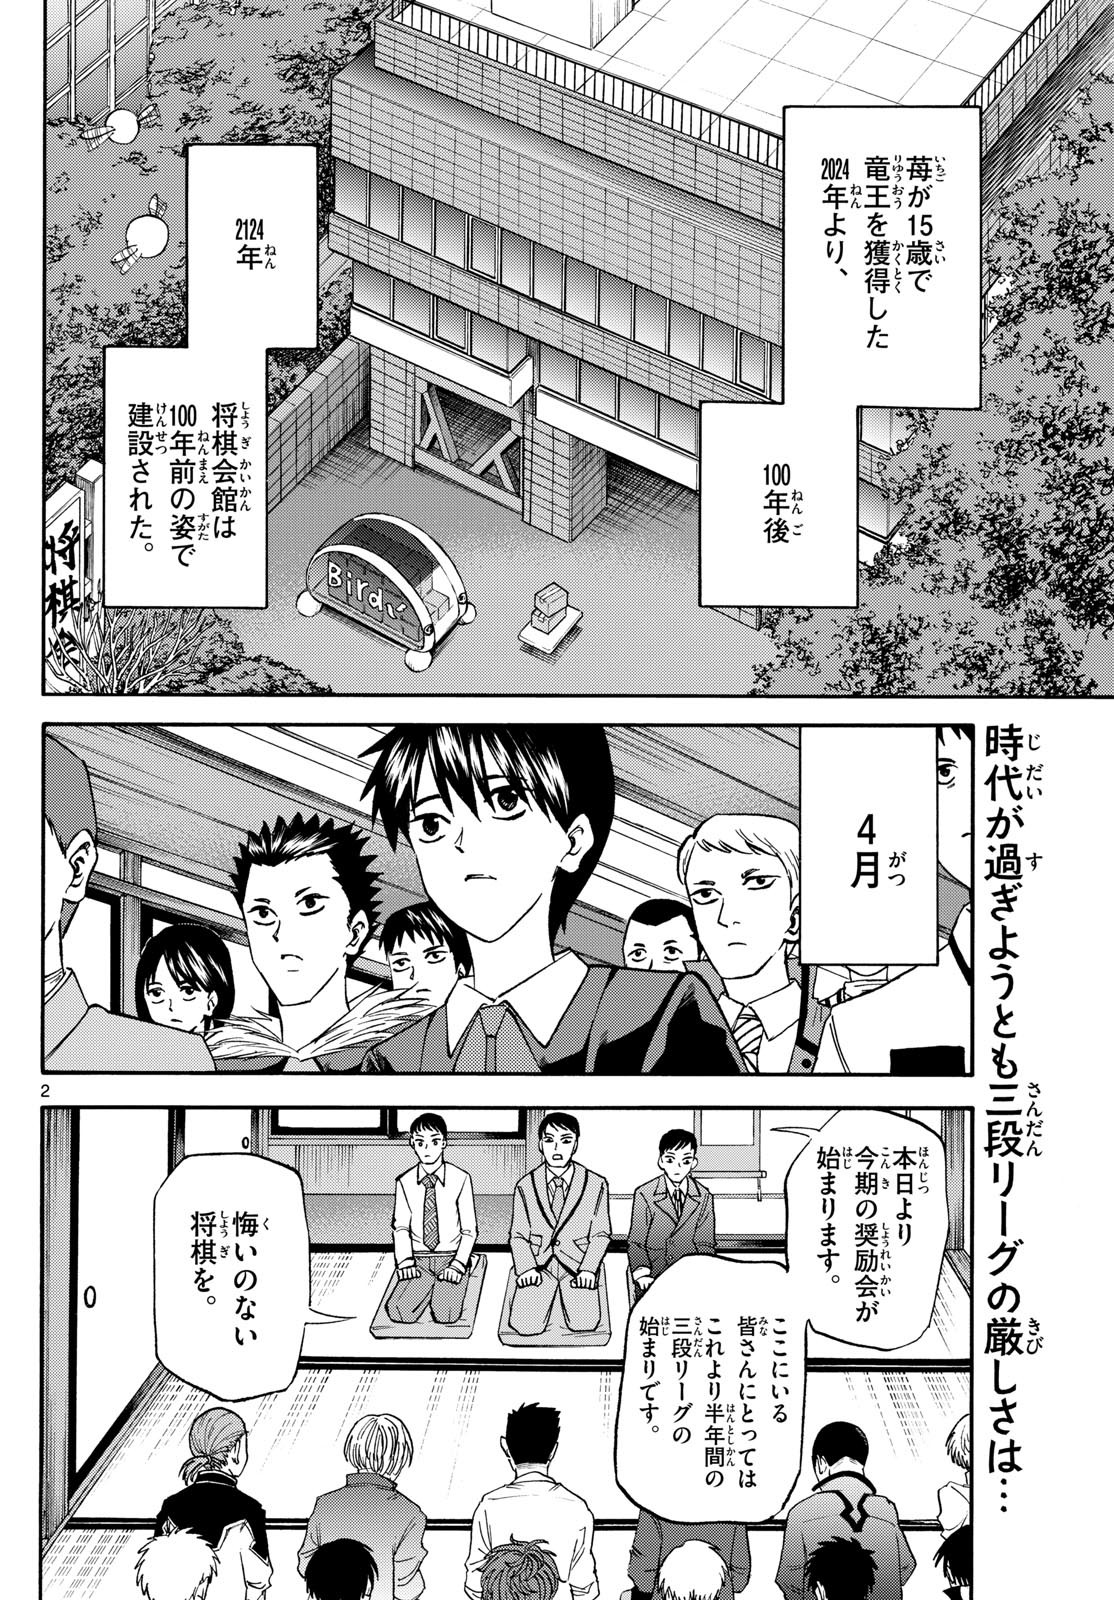 Ryu-to-Ichigo - Chapter 185 - Page 2